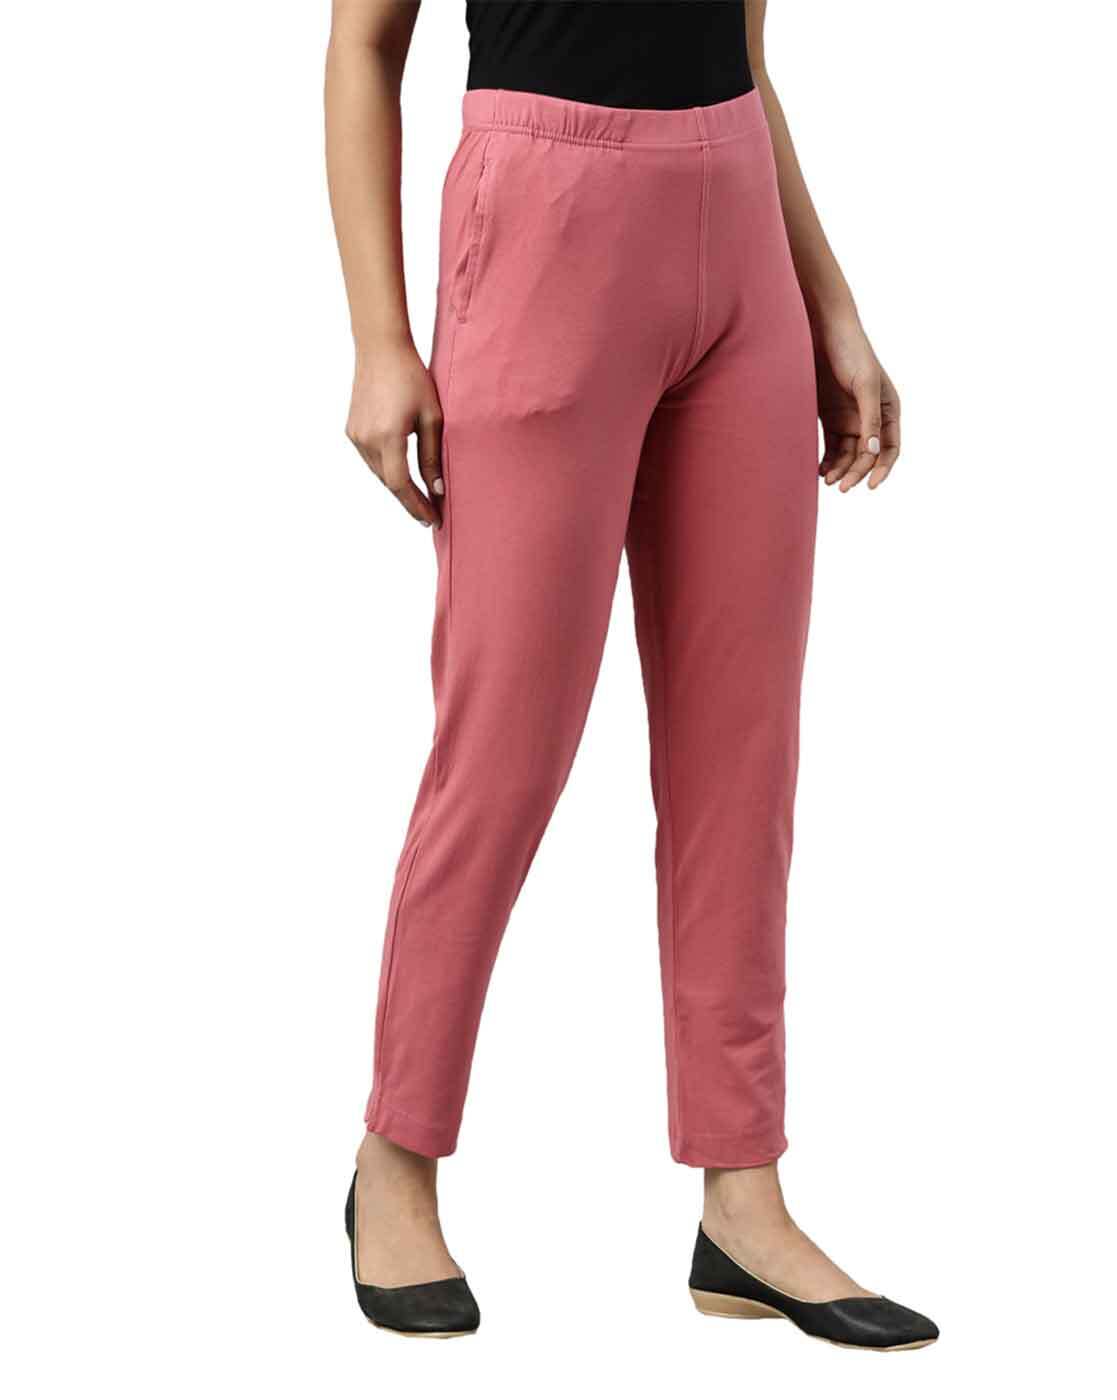 Buy GO COLORS Baby Pink Kurti Pants Online - Best Price GO COLORS Baby Pink  Kurti Pants - Justdial Shop Online.